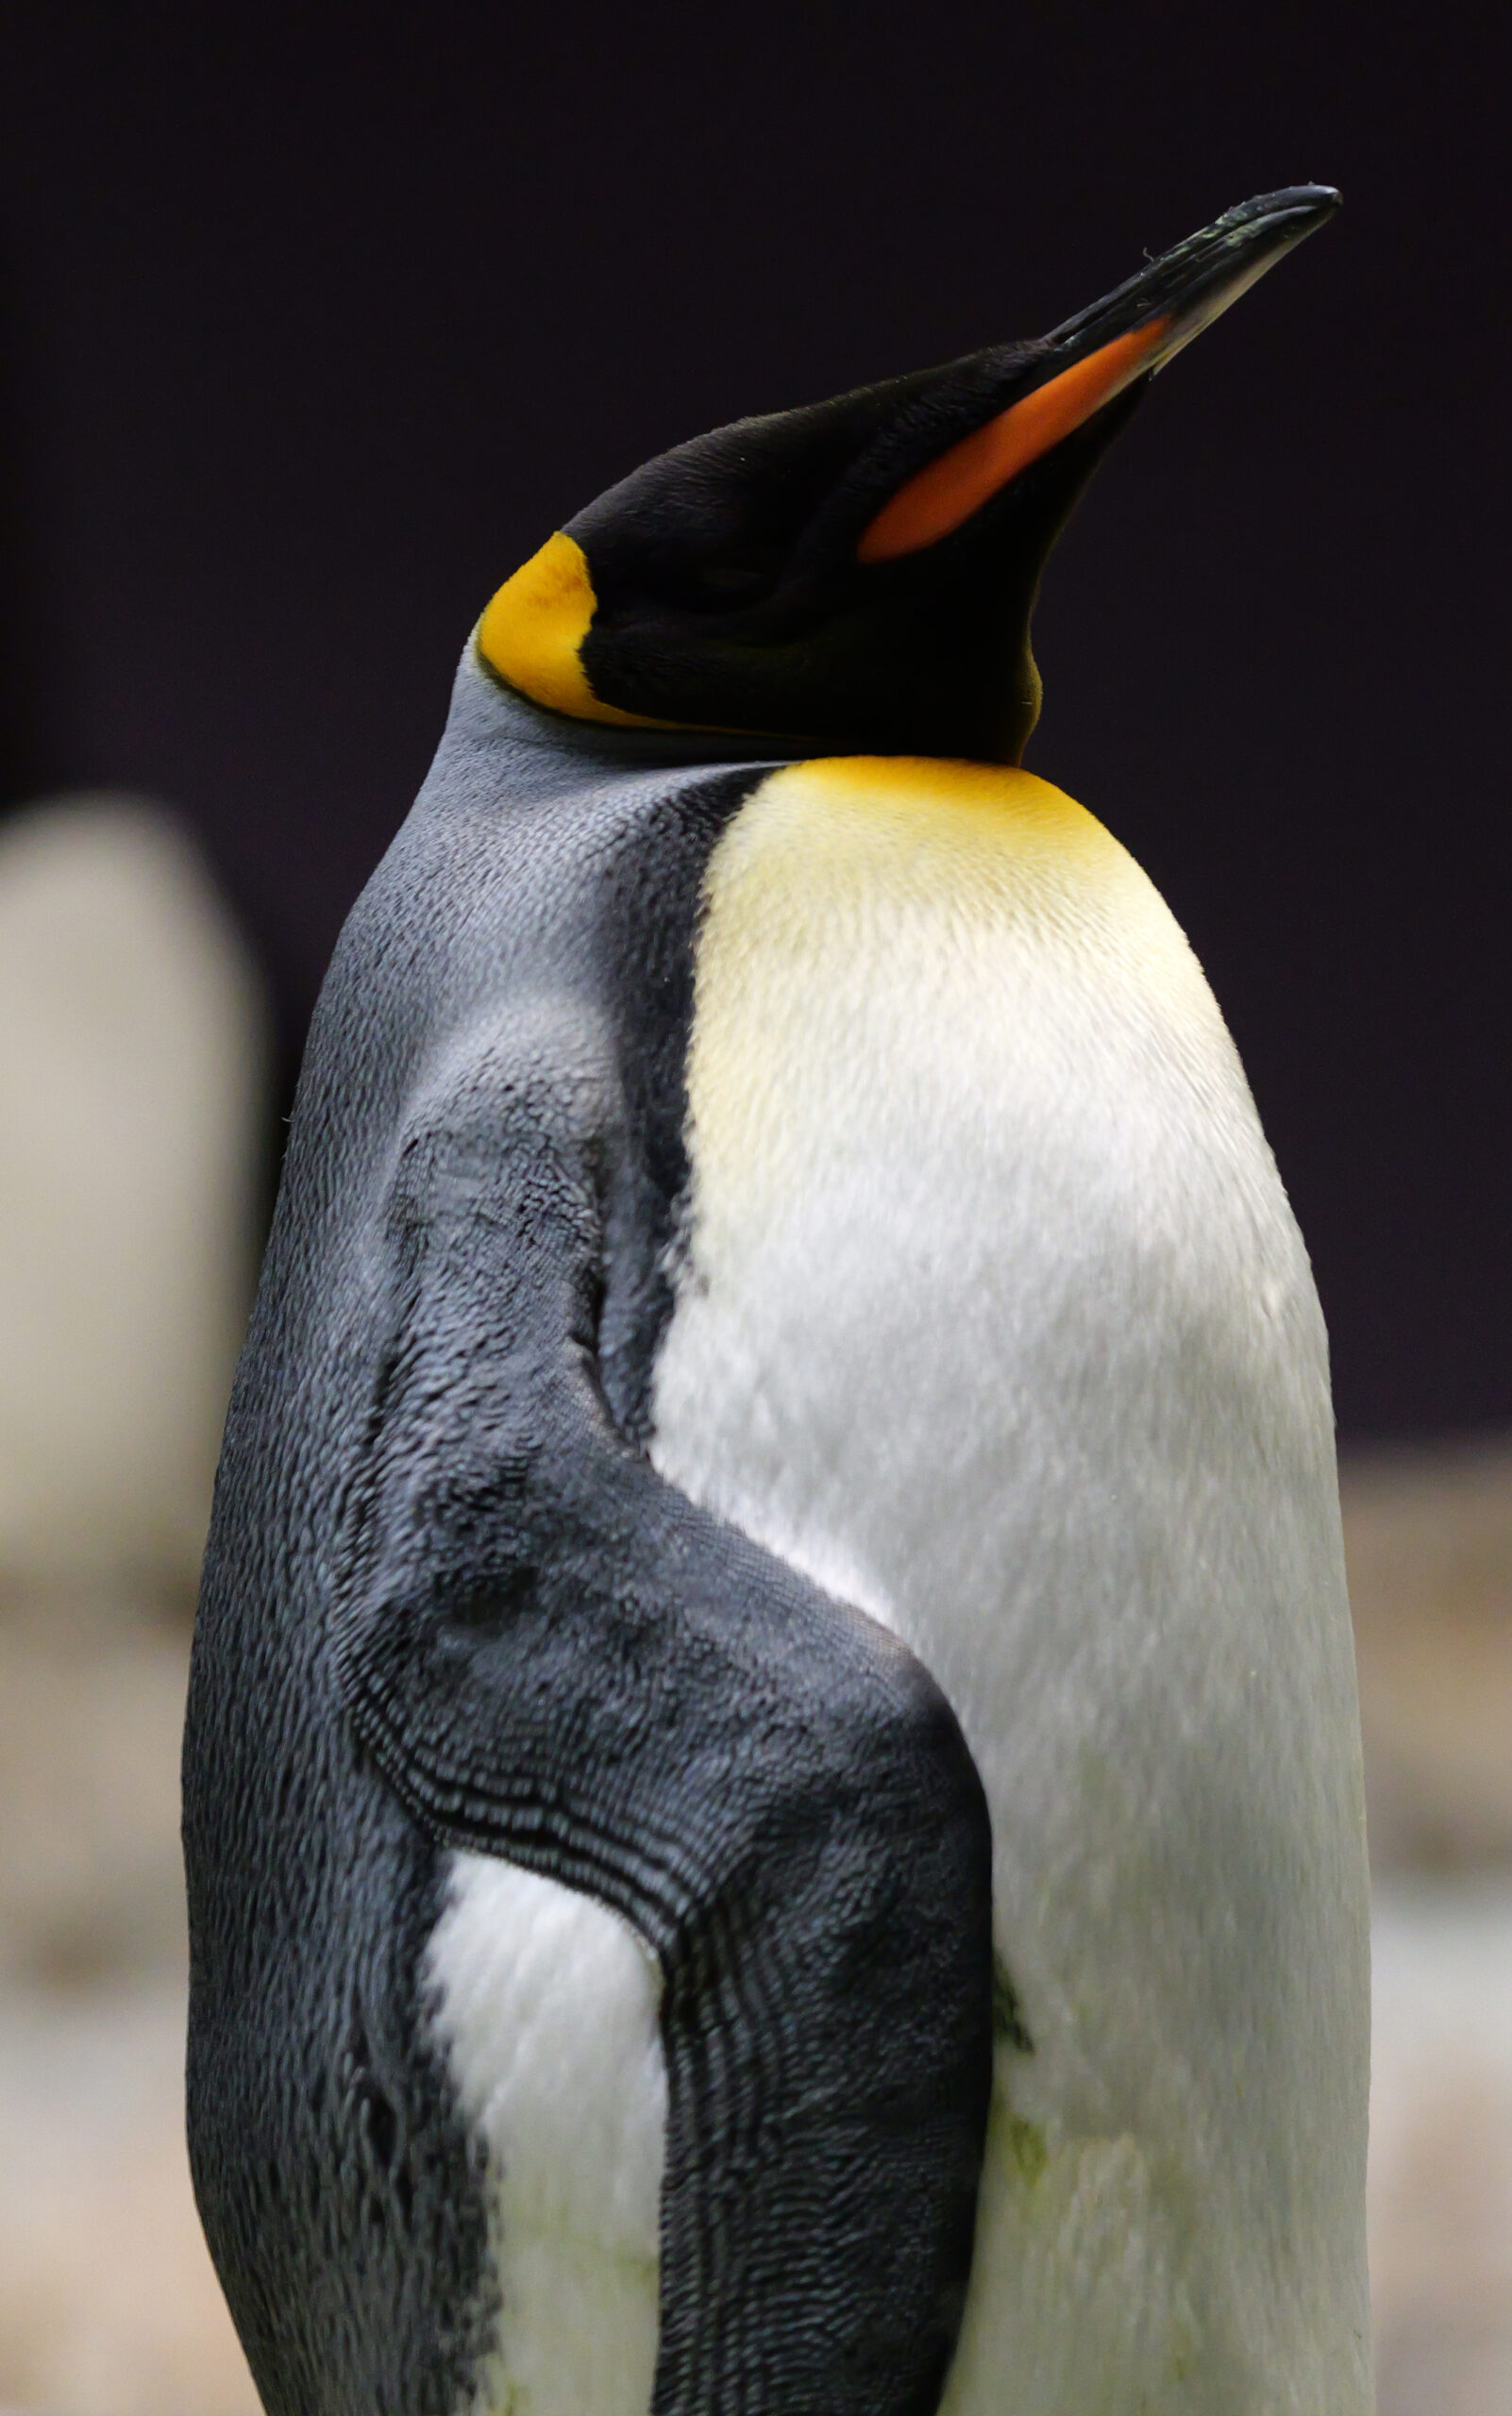 Pinguin, aufgenommen mit Lumix G9II.